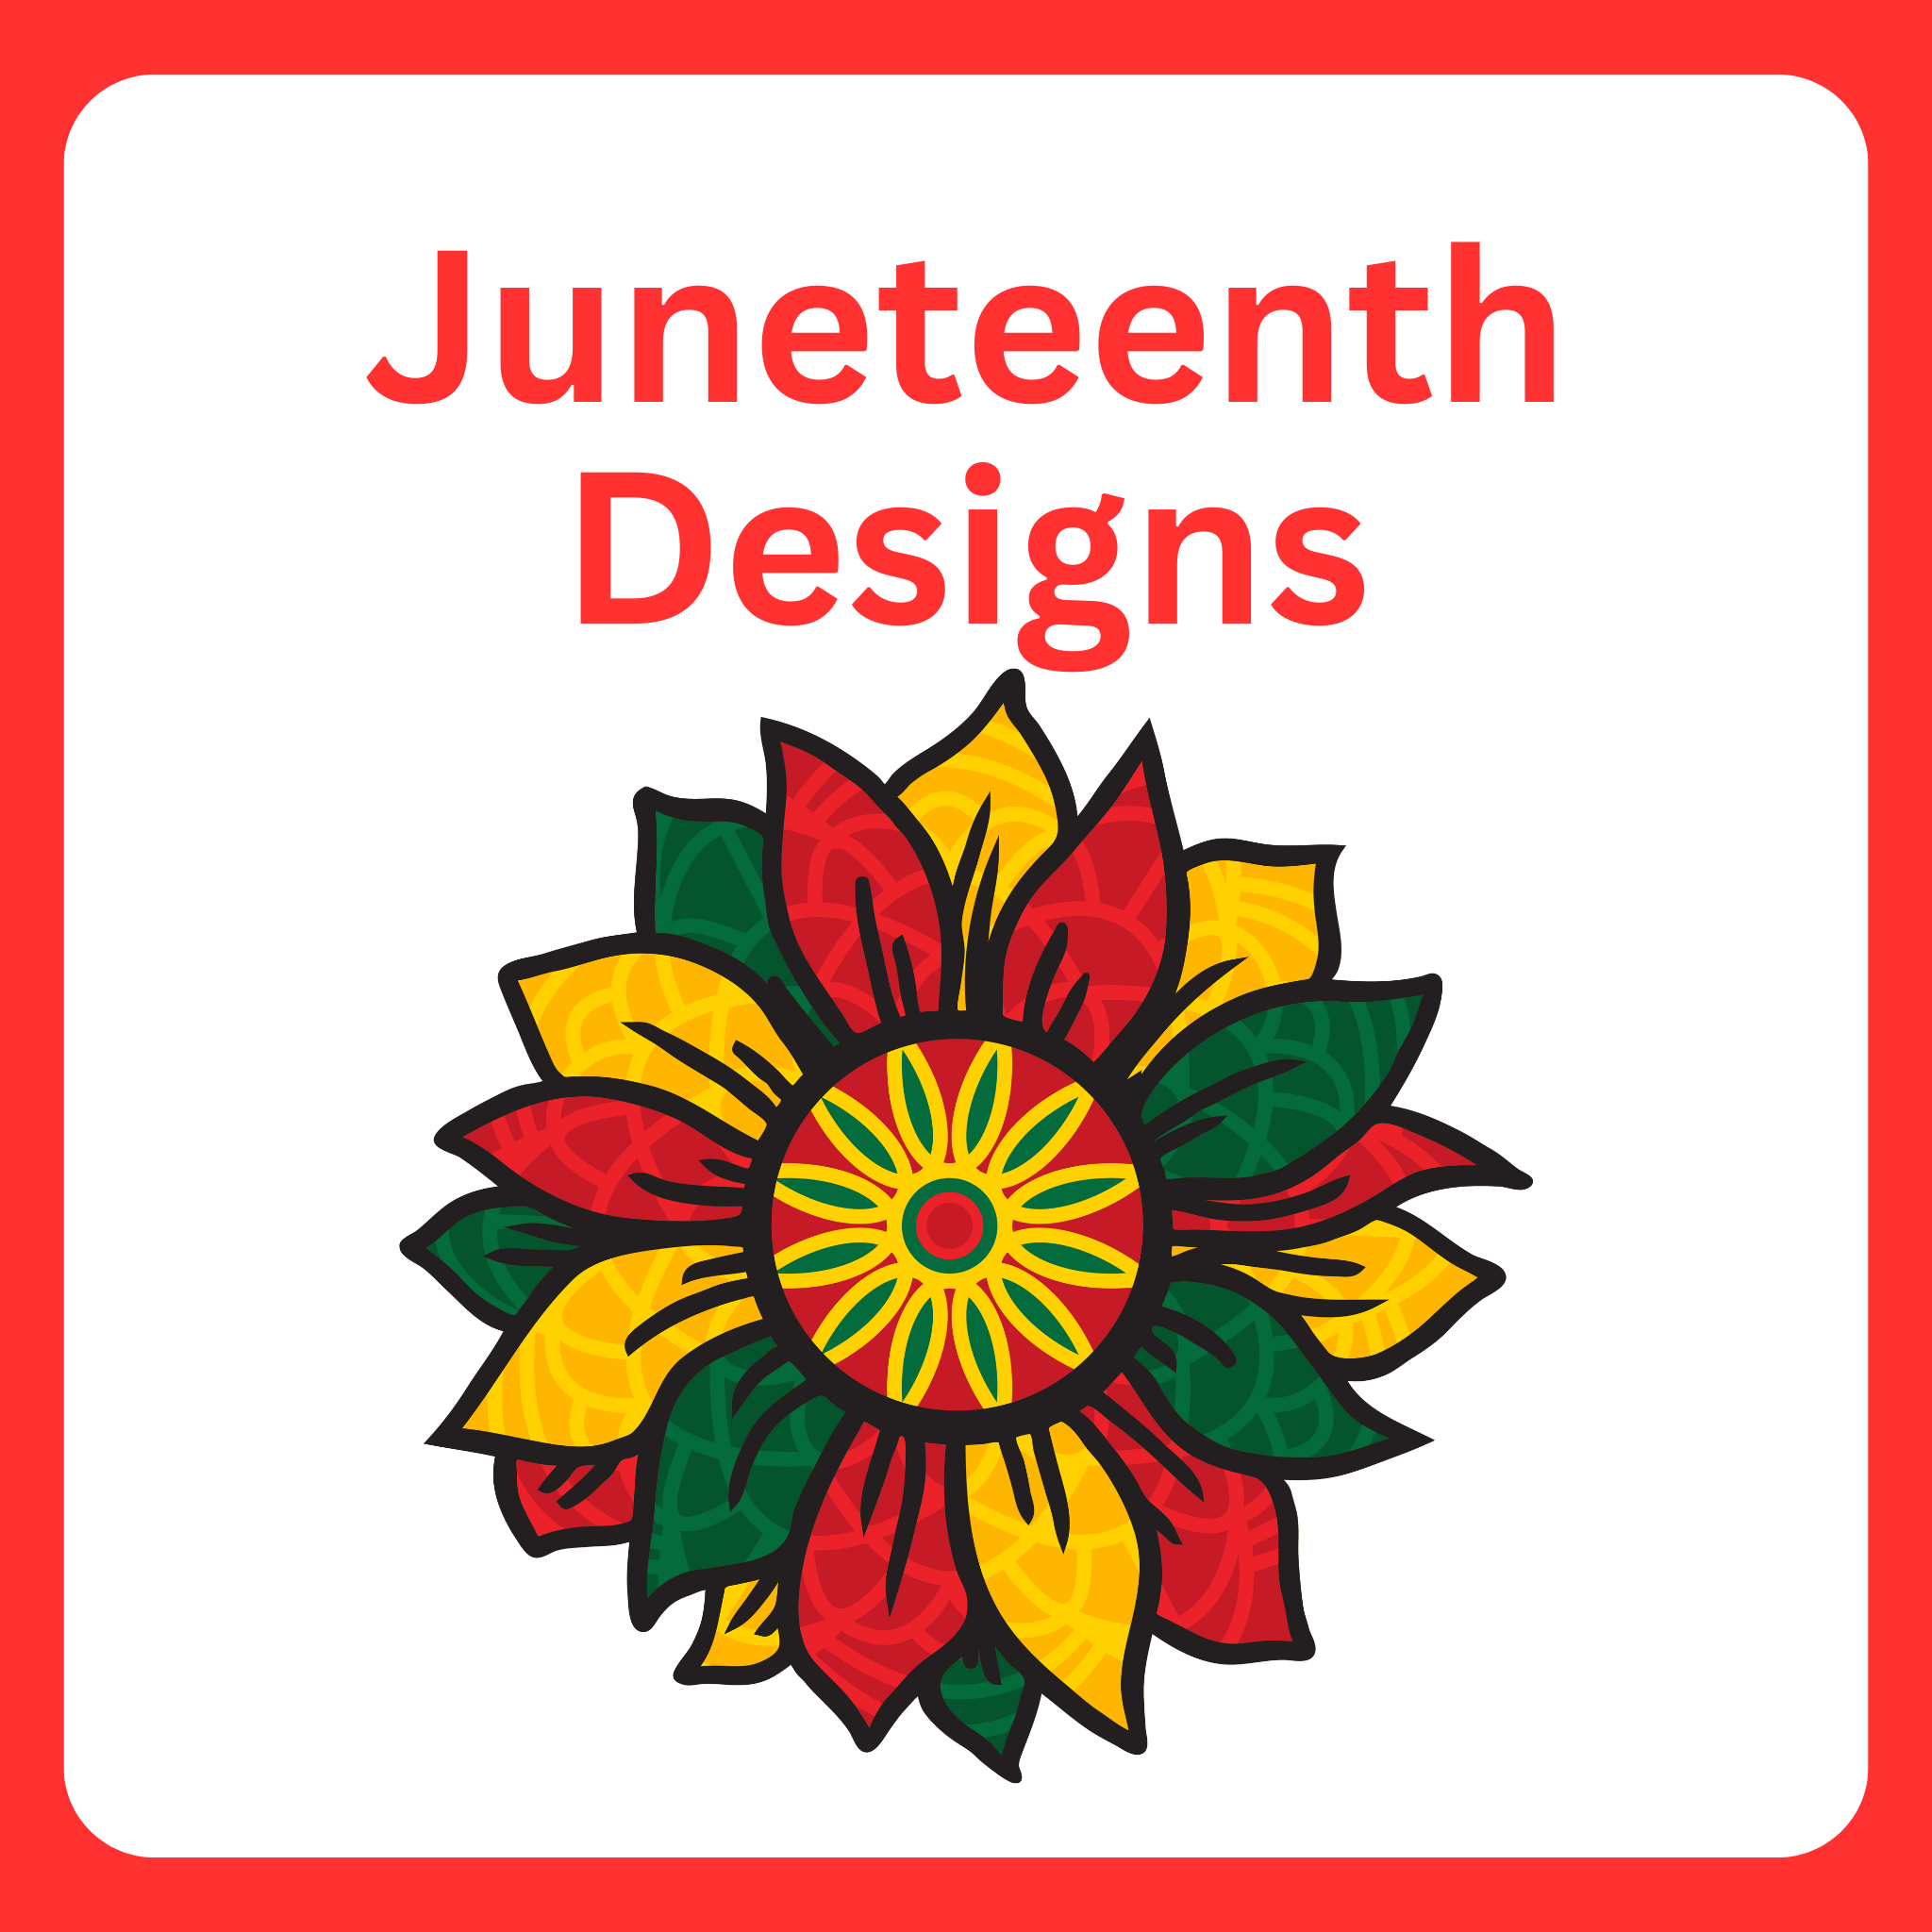 Juneteenth Designs